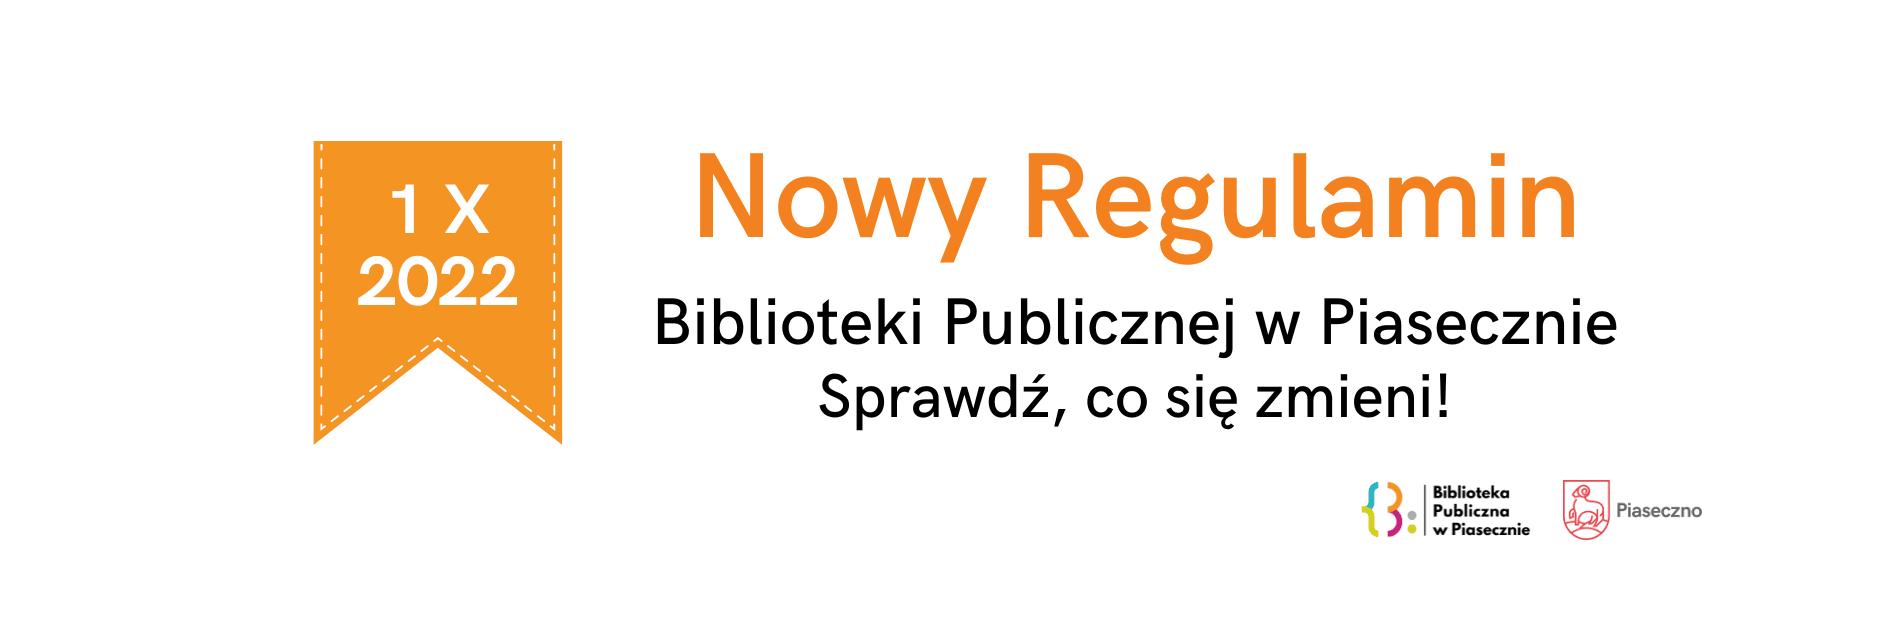 Nowy regulamin biblioteki - baner